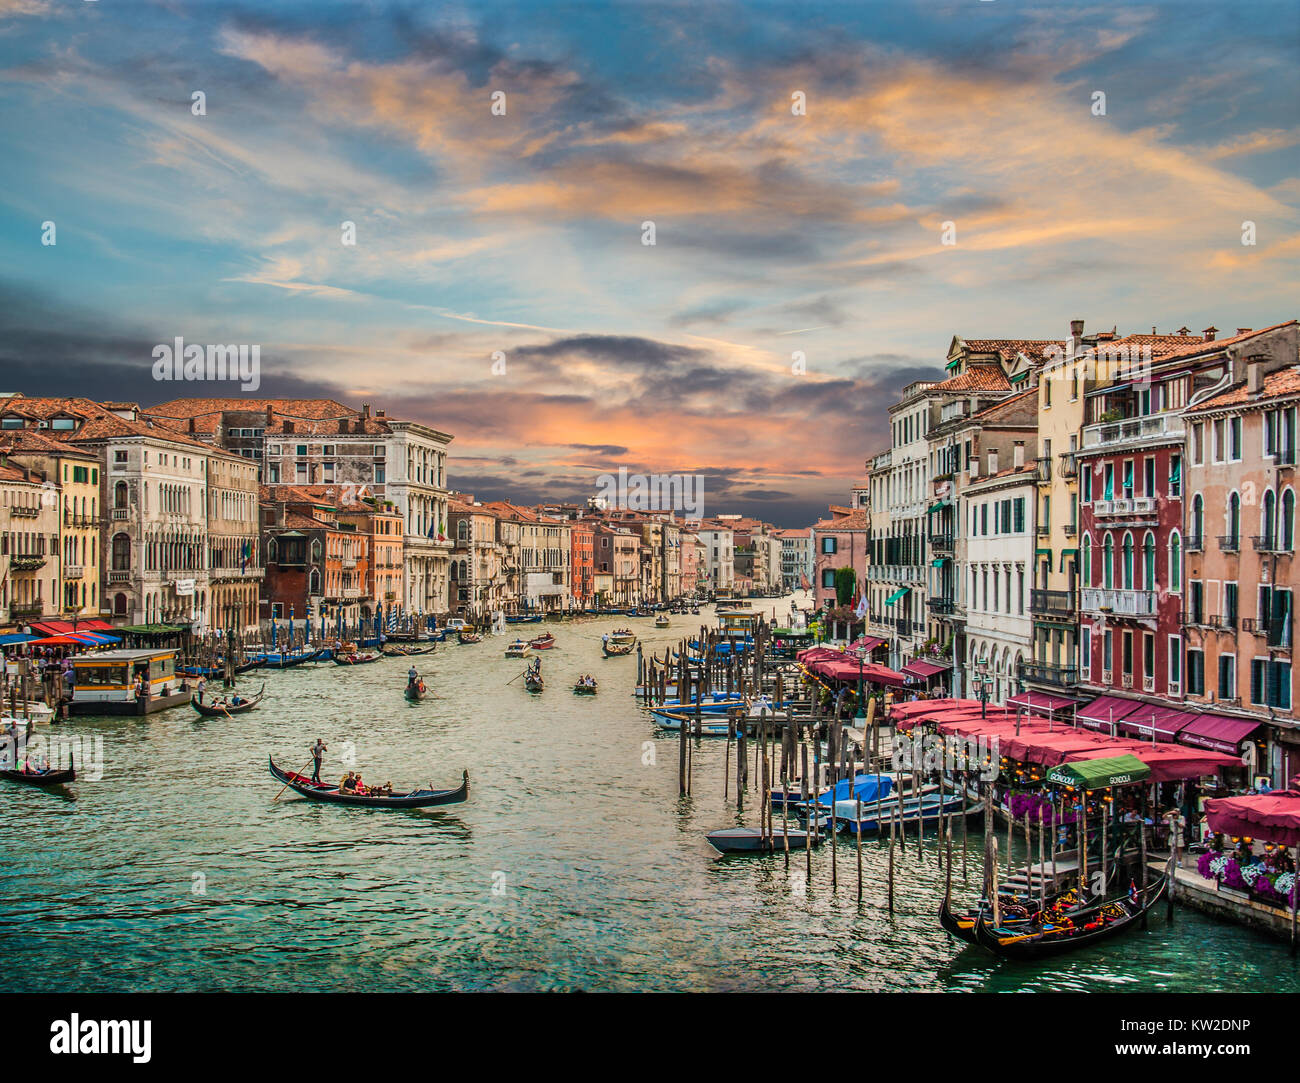 Vista panoramica del famoso Canal Grande dal famoso Ponte di Rialto al tramonto a Venezia, Italia con retro vintage stile Instagram effetto filtro Foto Stock